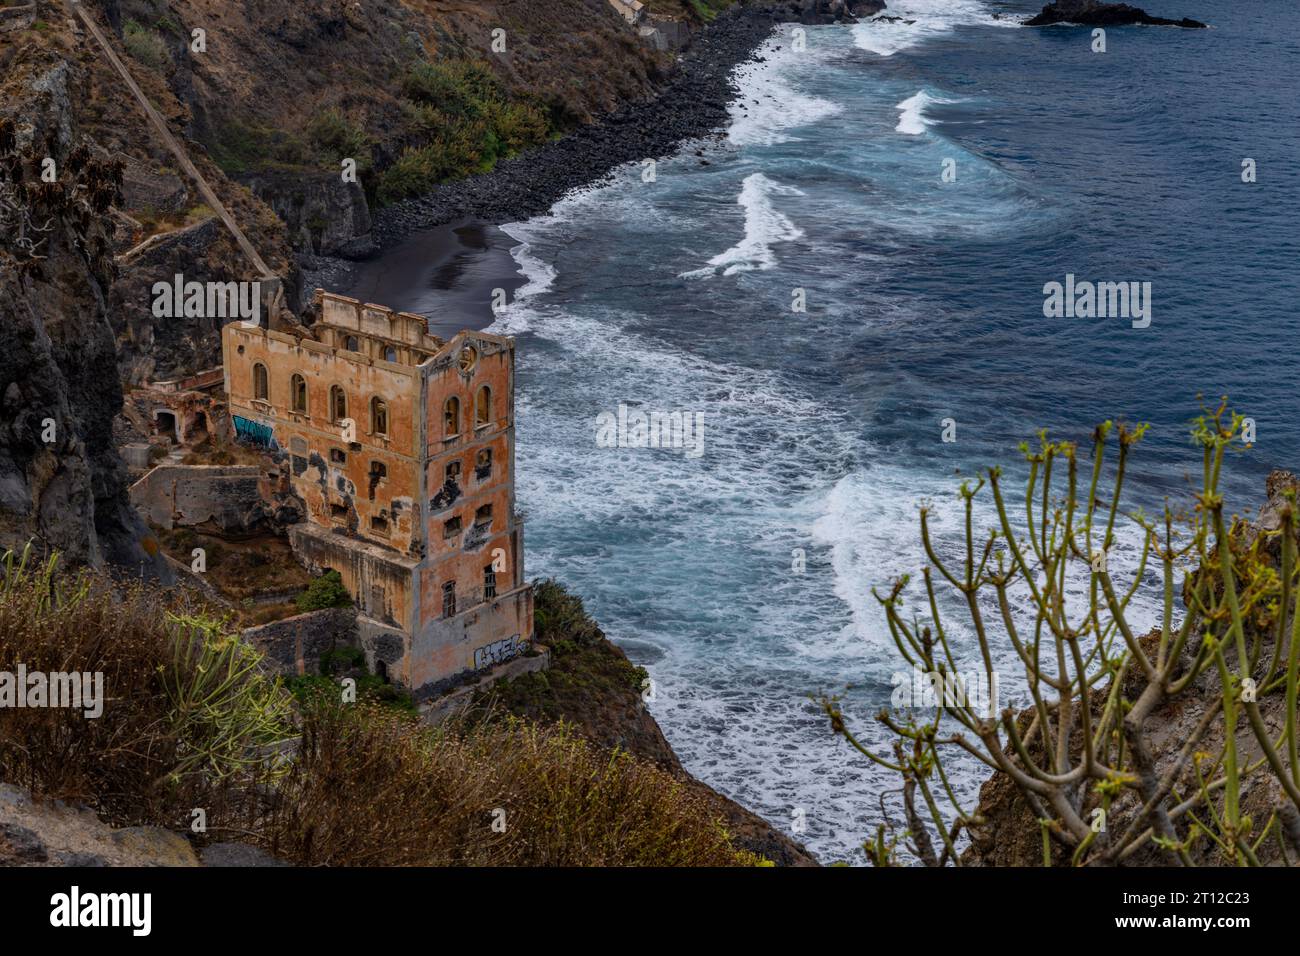 Elevador de Aguas de Gordejuela Spain industrial ruin near Los Realejos, Tenerife Stock Photo